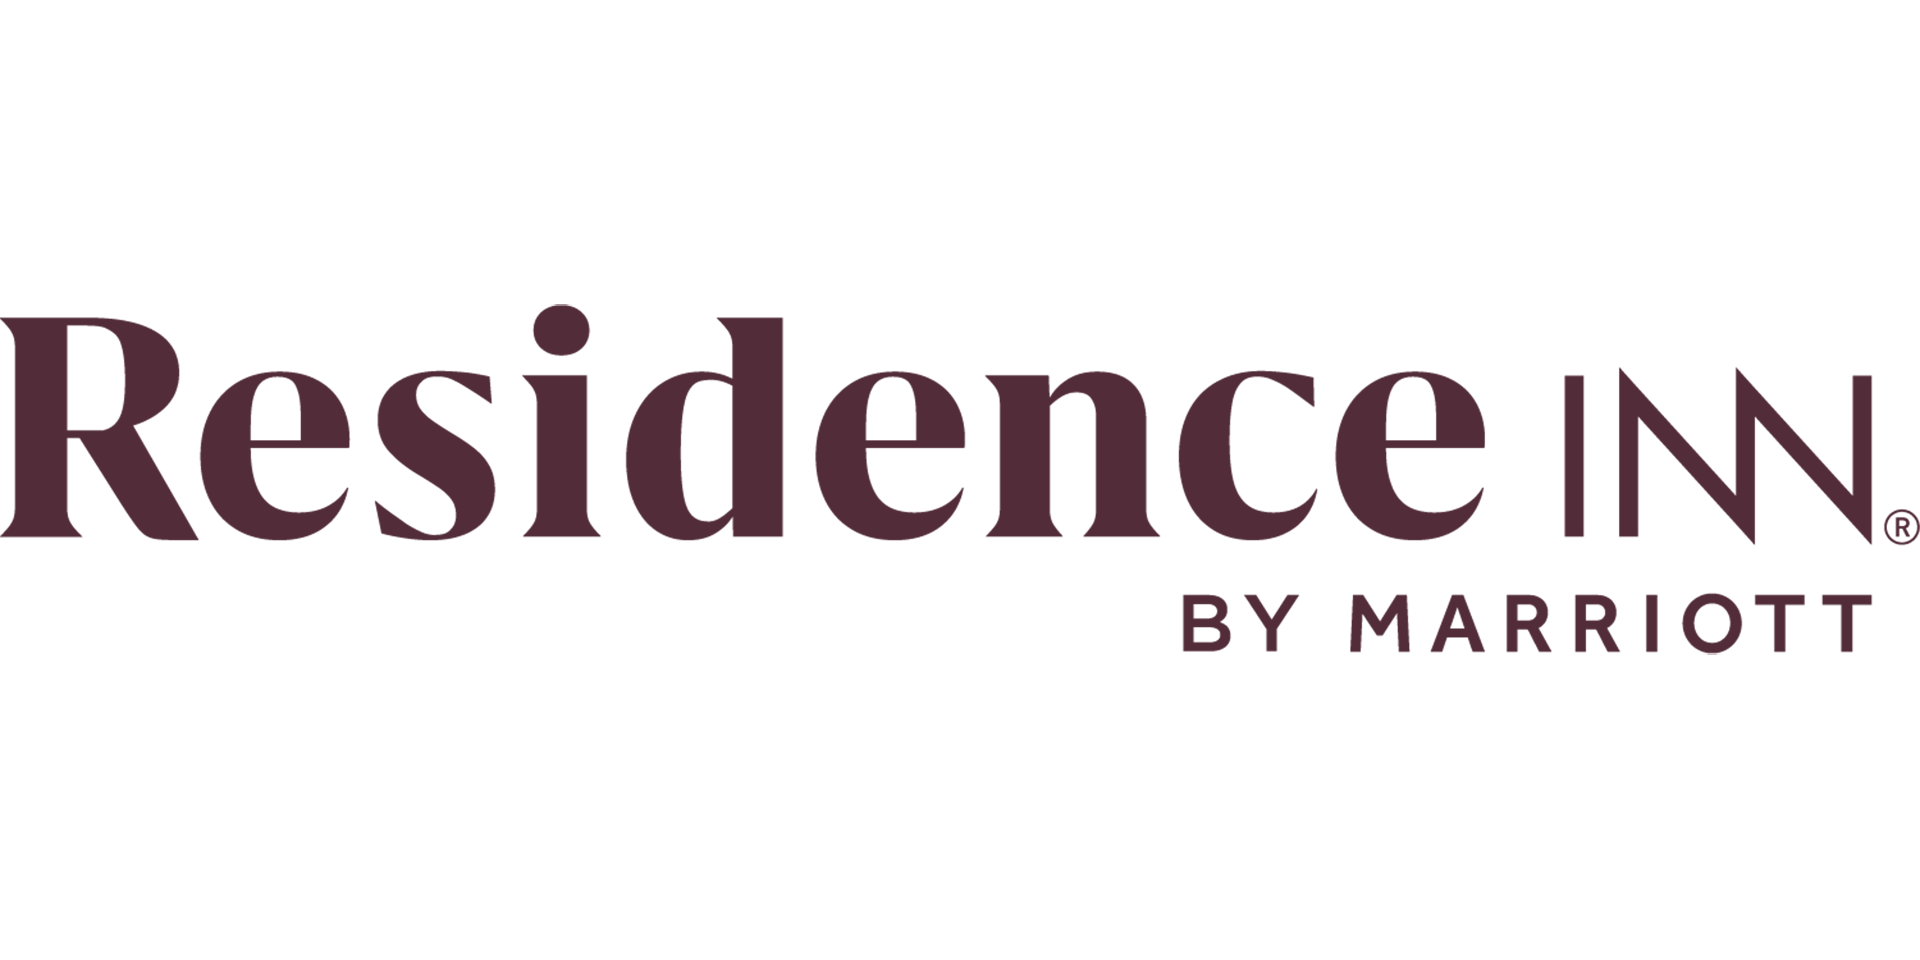 Residence Inn Logo - Residence Inn by Marriott. Marriott News Center